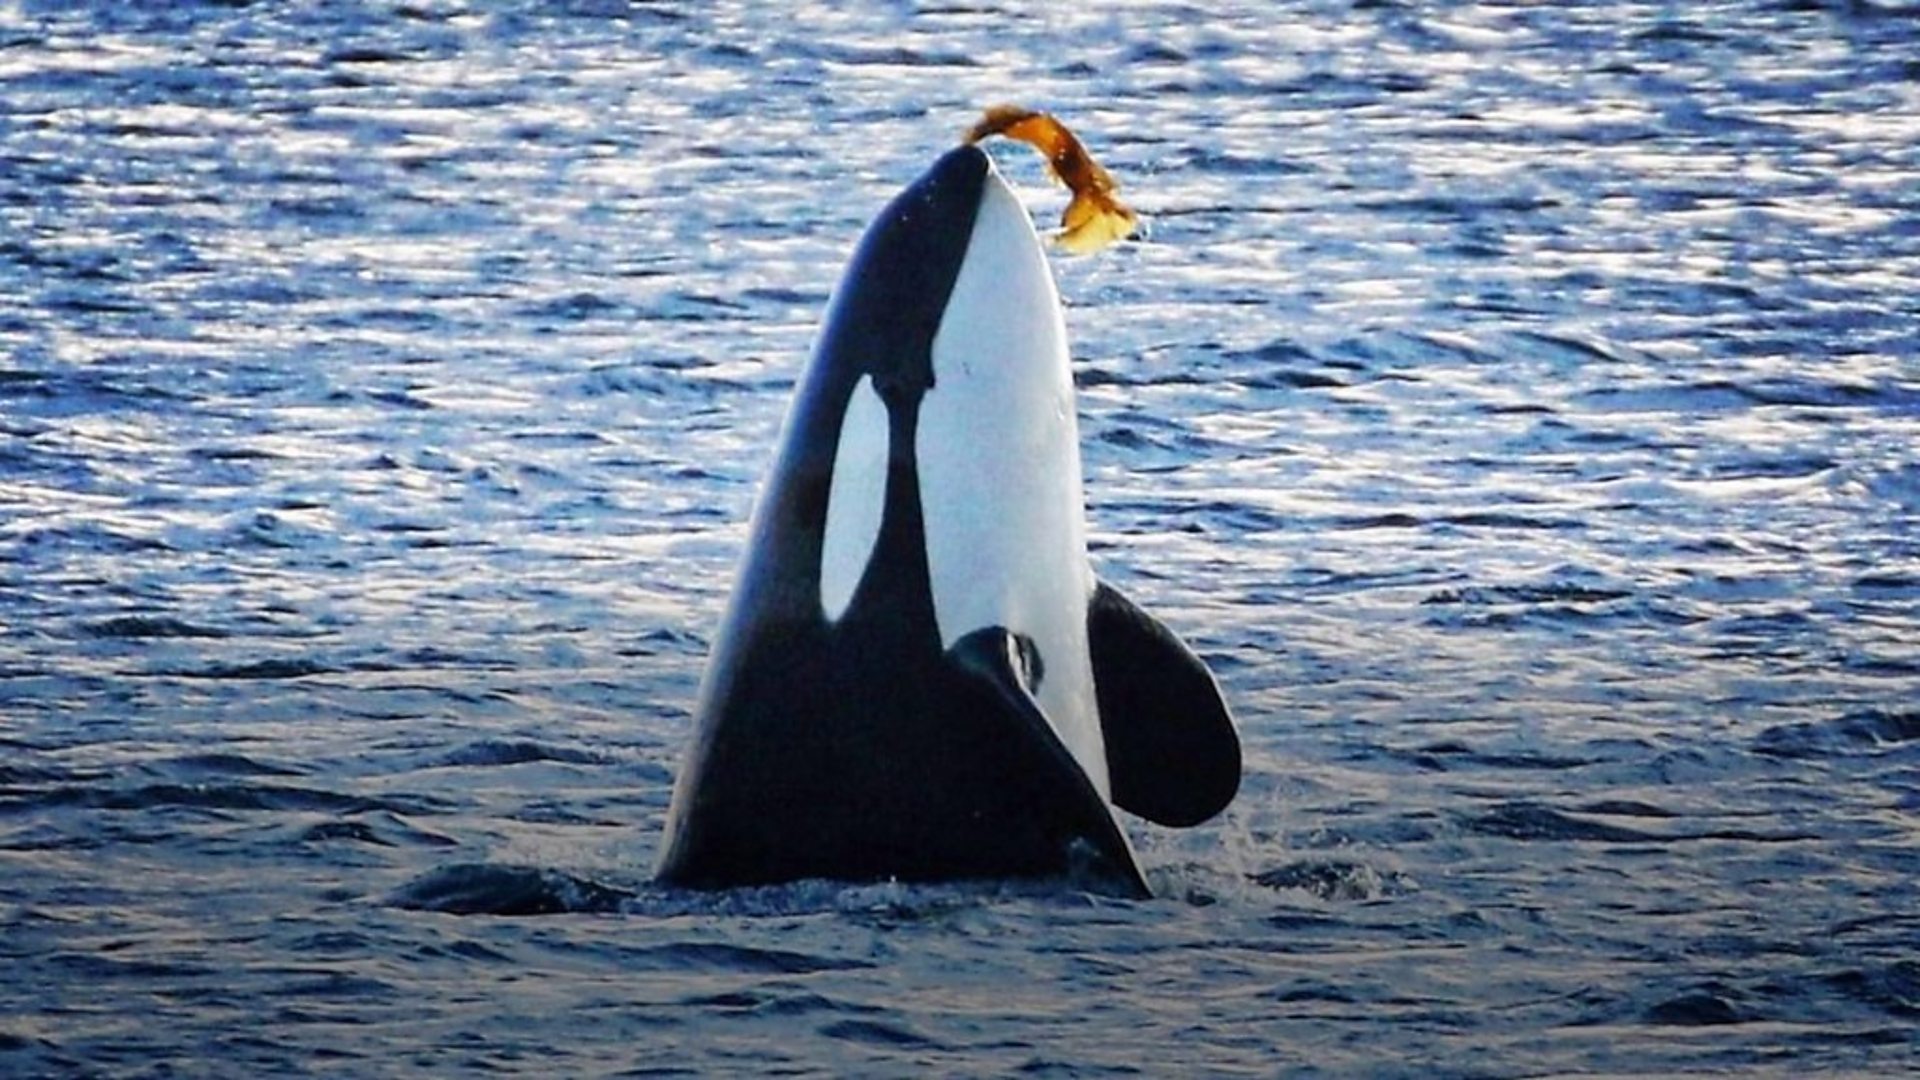 Кад живот посветиш фотографисању китова D